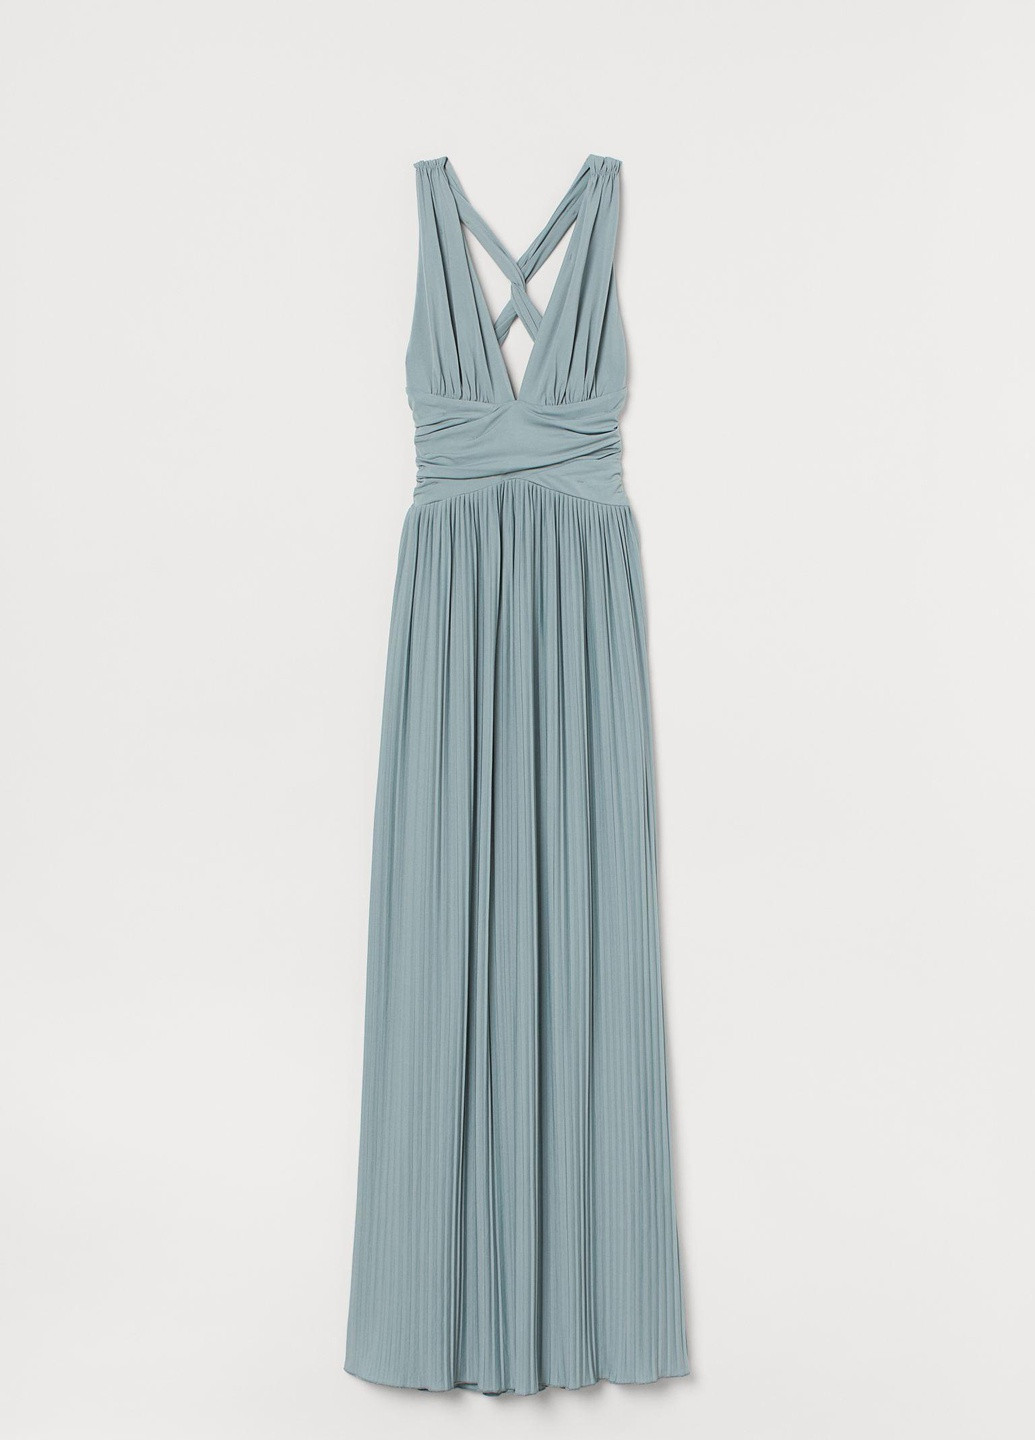 Світло-блакитна вечірня сукня,блідо-блакитний, H&M